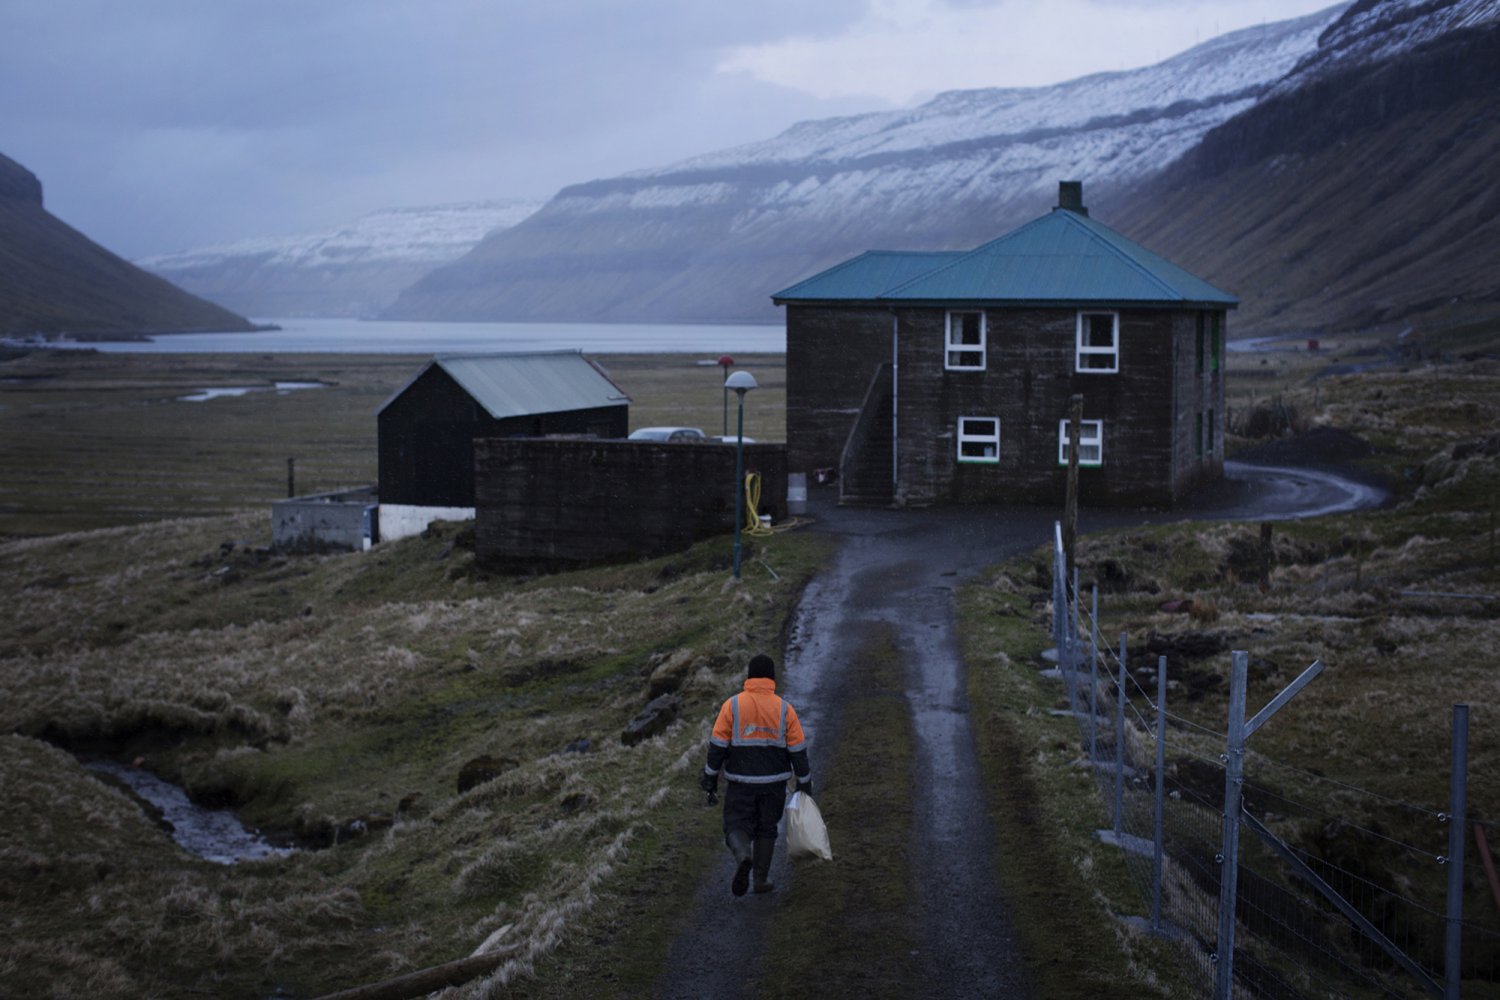 Un homme, seul et en tenue de travail, un sac à la main, avance vers une maison en bois au milieu d'un paysage magnifique, humide et froid.